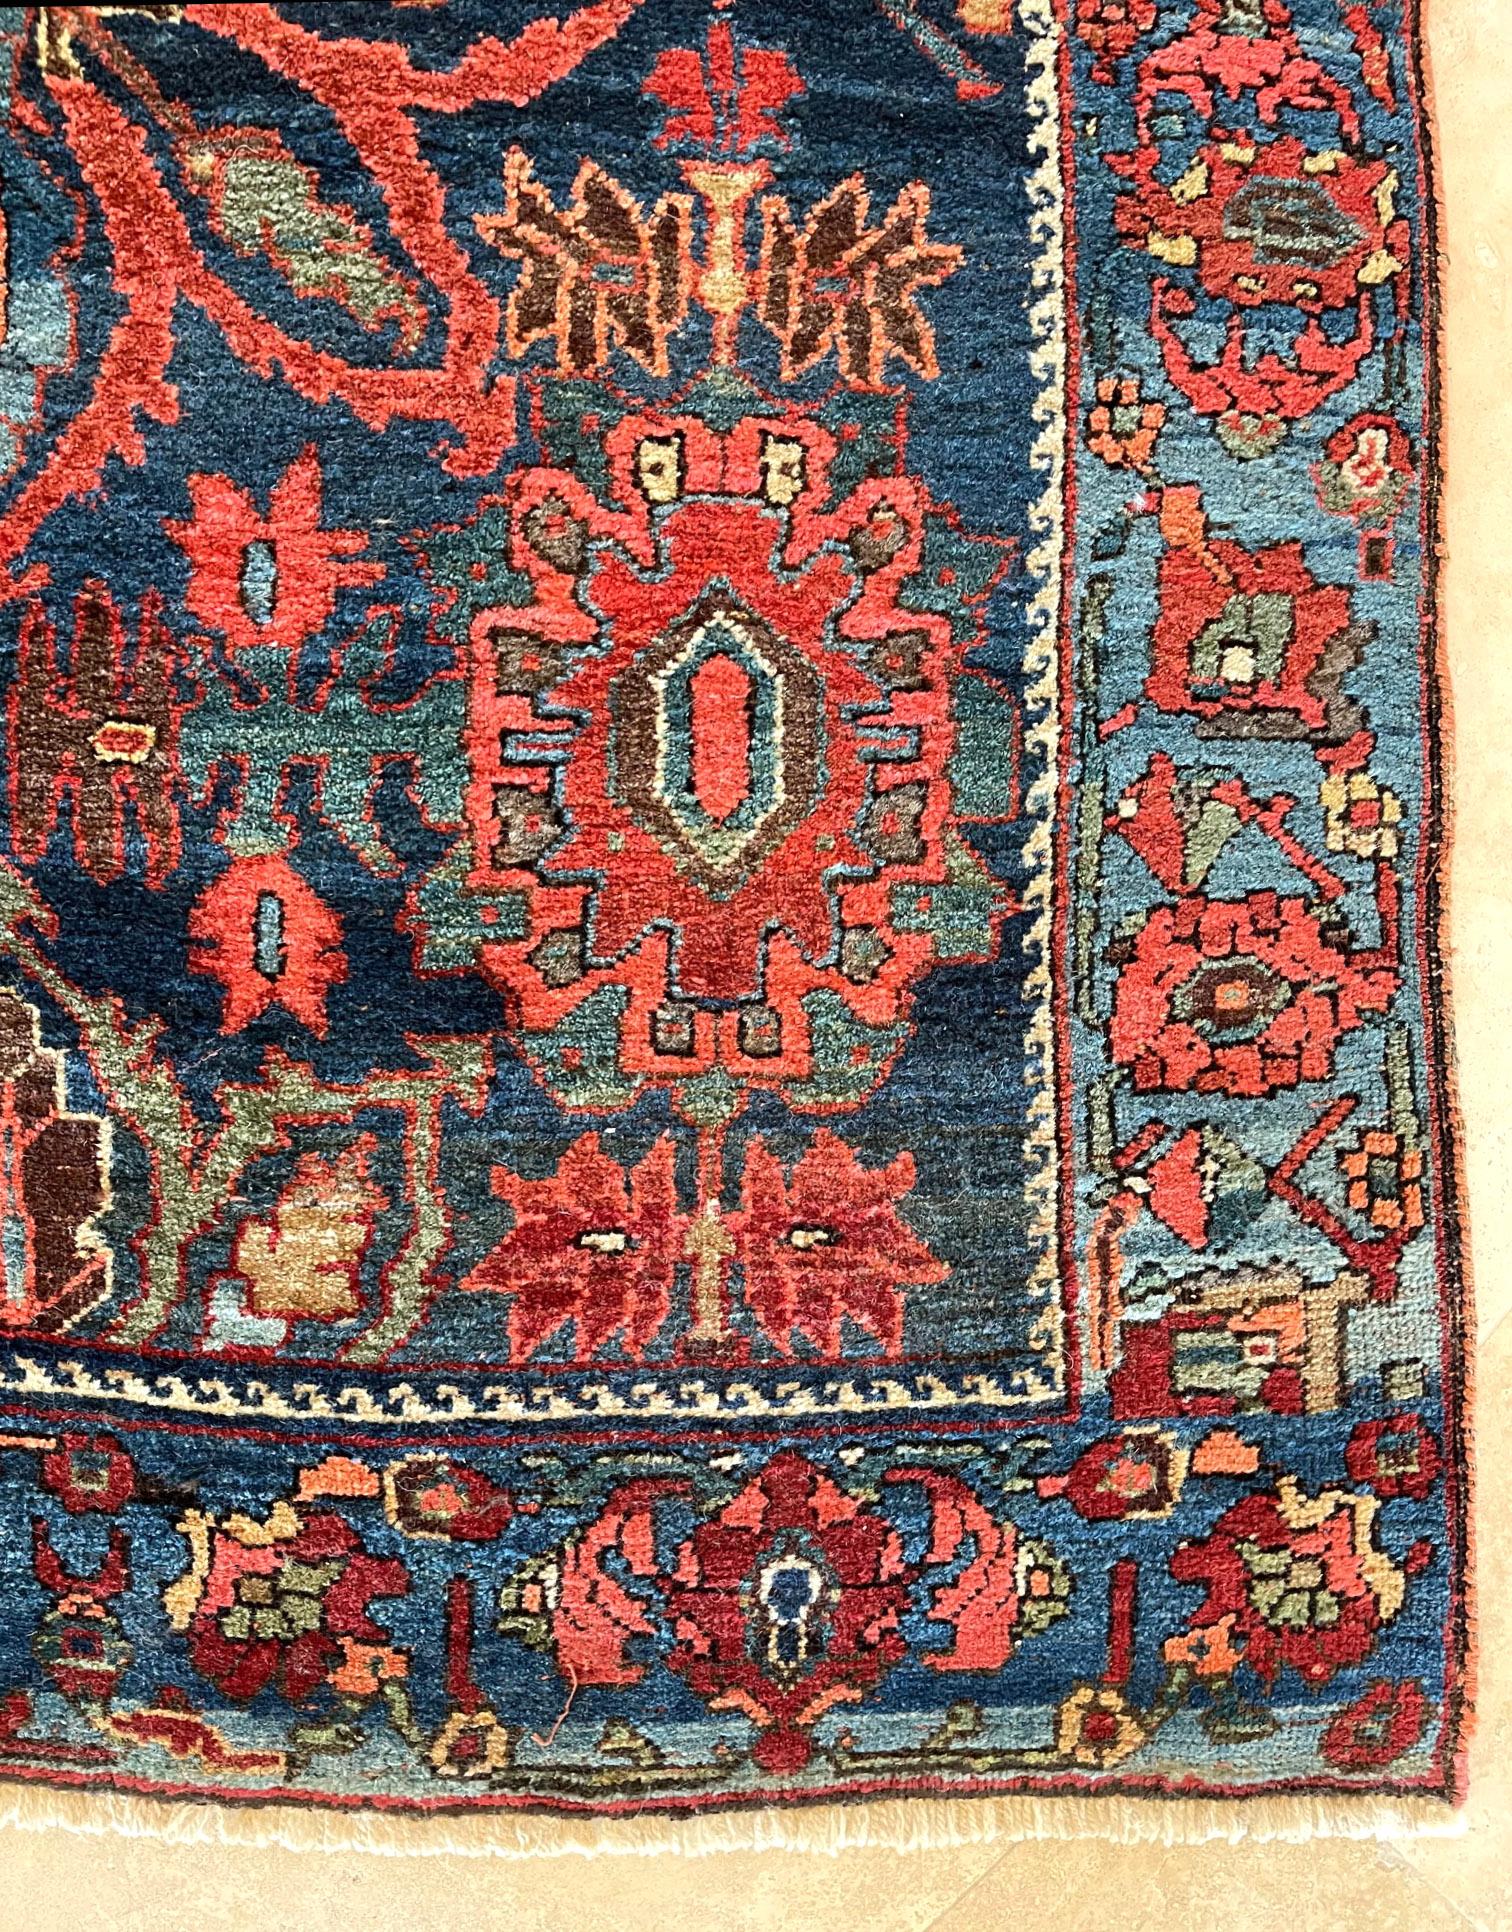 Wool Antique Persian Hand Knotted Blue Semi Floral Bijar Bidjar Rug 1920 Circa